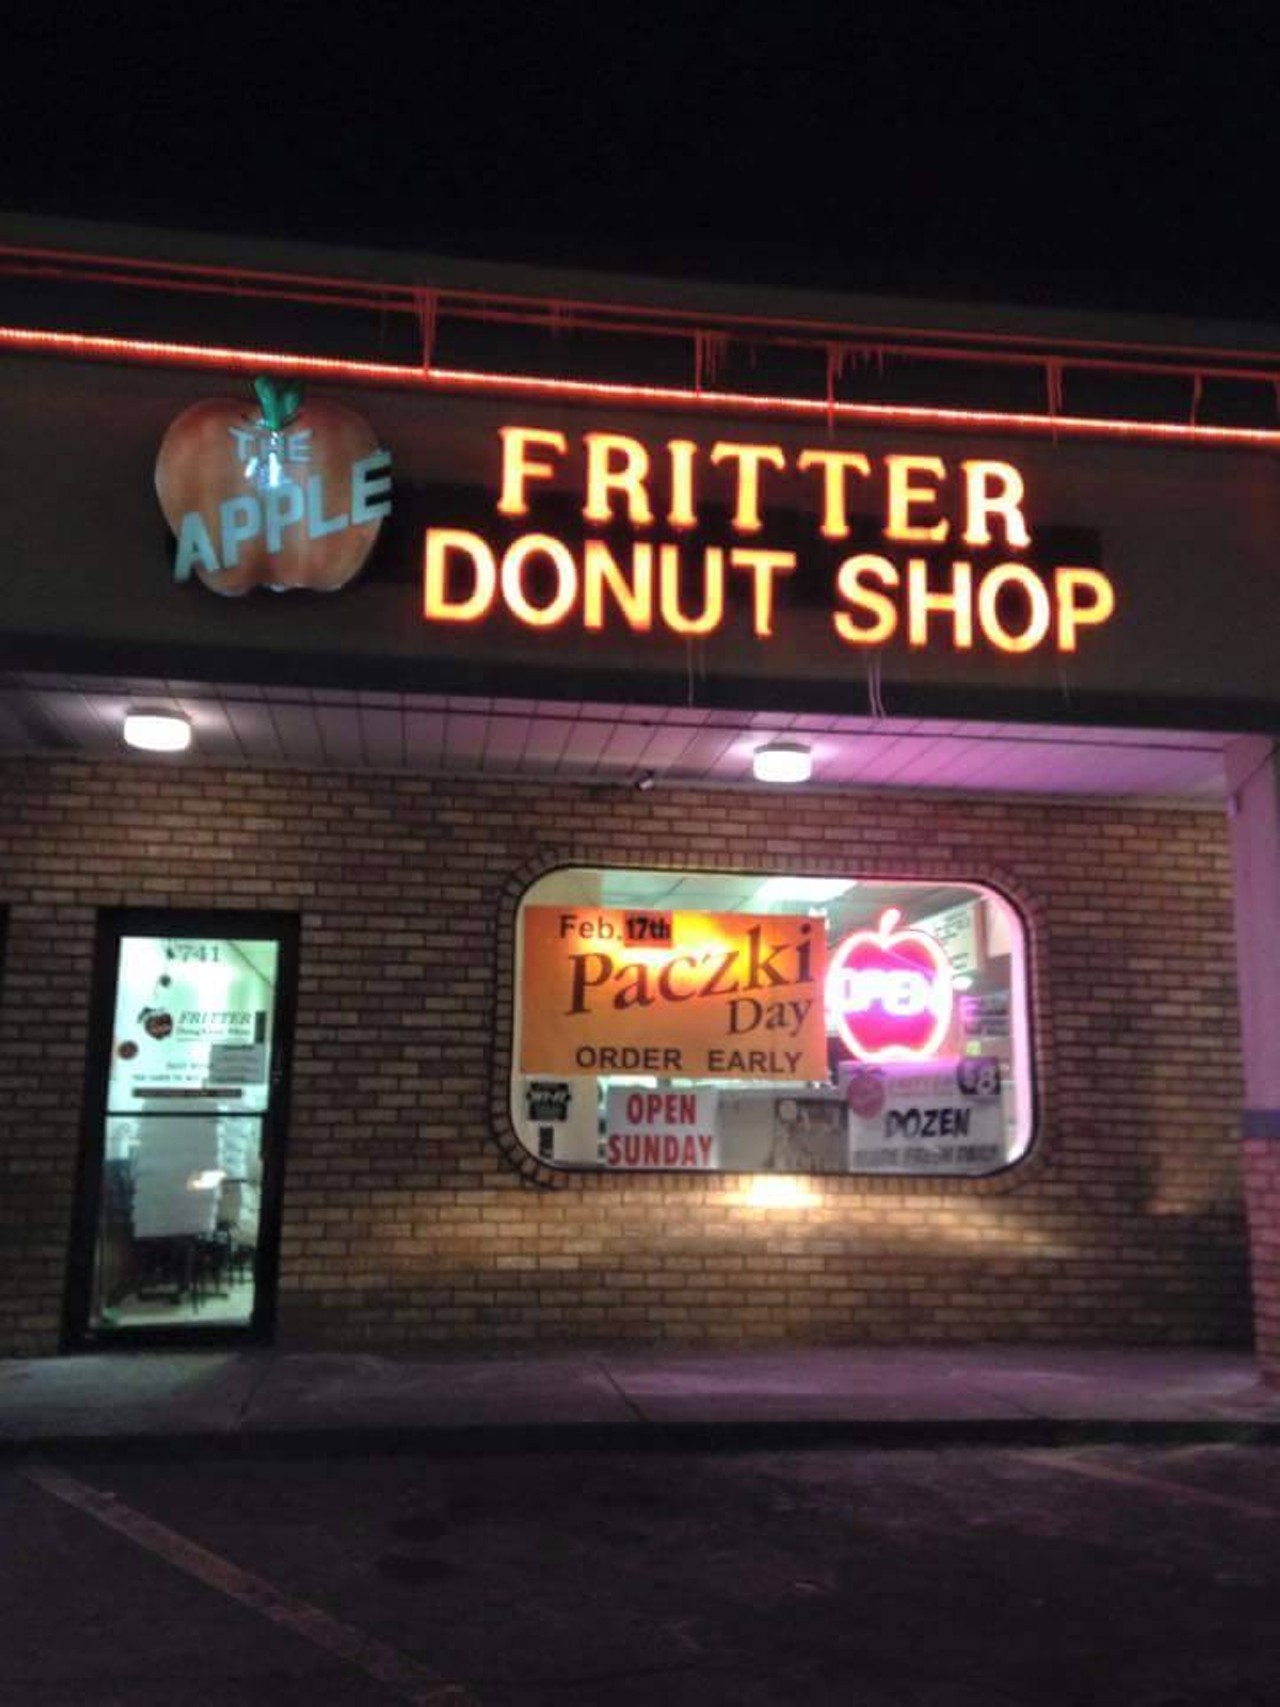 Apple Fritter Donut Shop
Location: 741 E 9 Mile Rd, Ferndale
Hours: Mon - Fri 5am- 4:30pm, Sat 5am - 2 pm, Sun 6am-2pm